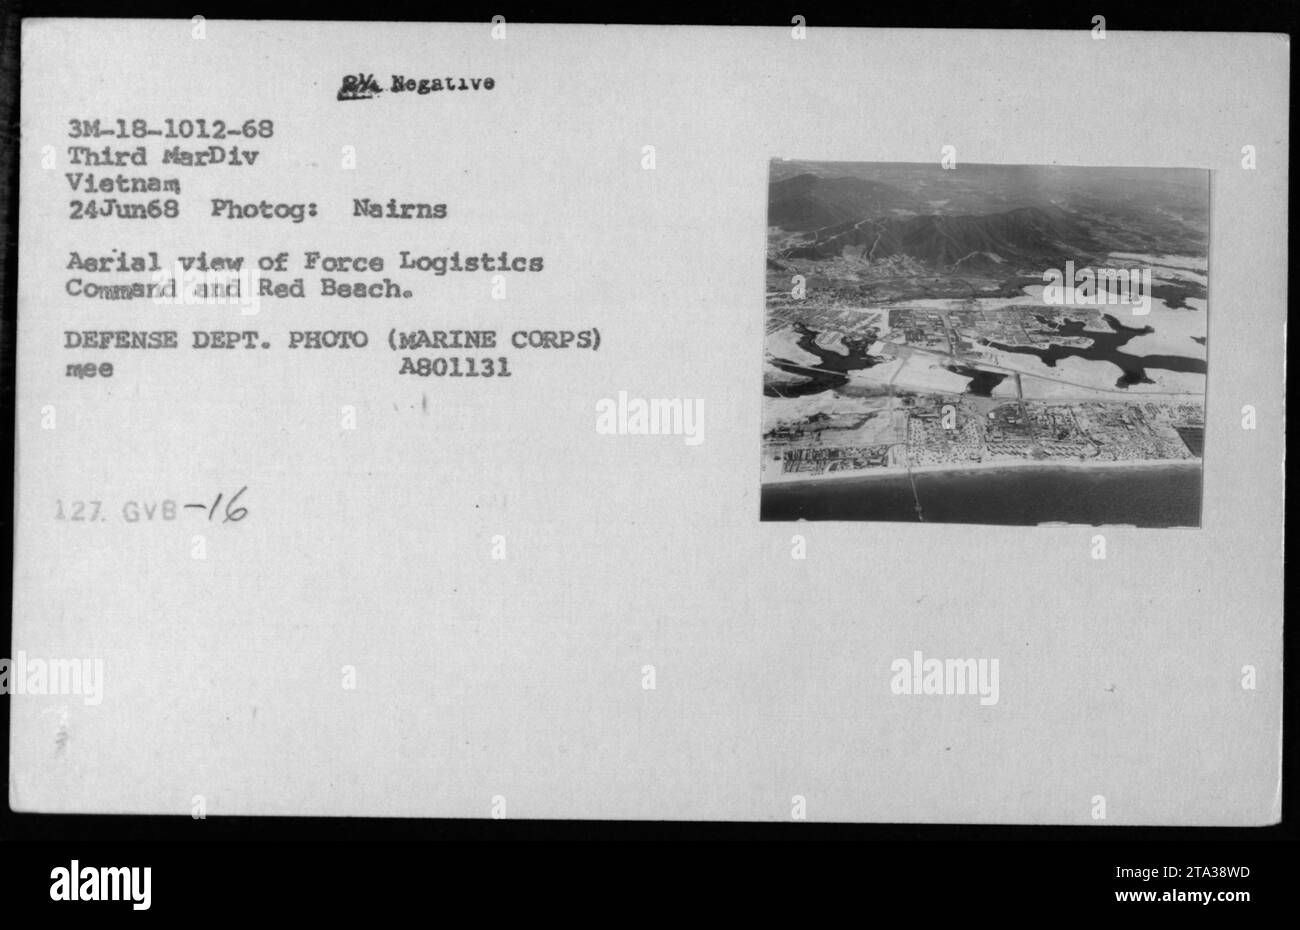 Luftaufnahme des Force Logistics Command und des Red Beach in Vietnam am 24. Juni 1968. Dieses Foto, aufgenommen von Nairns, zeigt das Layout und die Aktivitäten der Militärbasis während des Vietnamkriegs. Bildquelle: Verteidigungsabteilung Foto (Marine Corps) A801131. Stockfoto